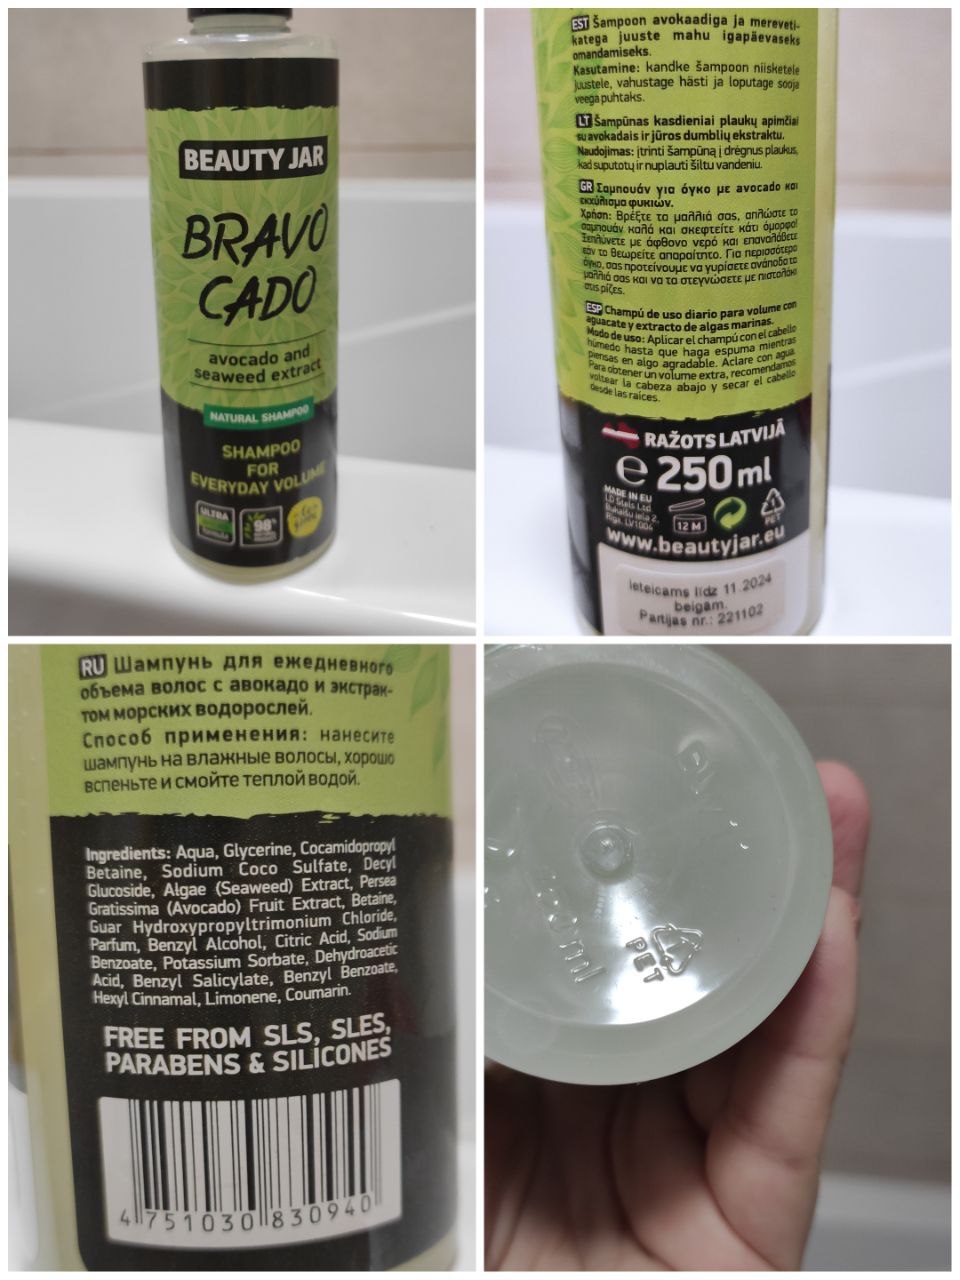 Шампунь та бальзам для волосся "Bravo Cado" Beauty Jar